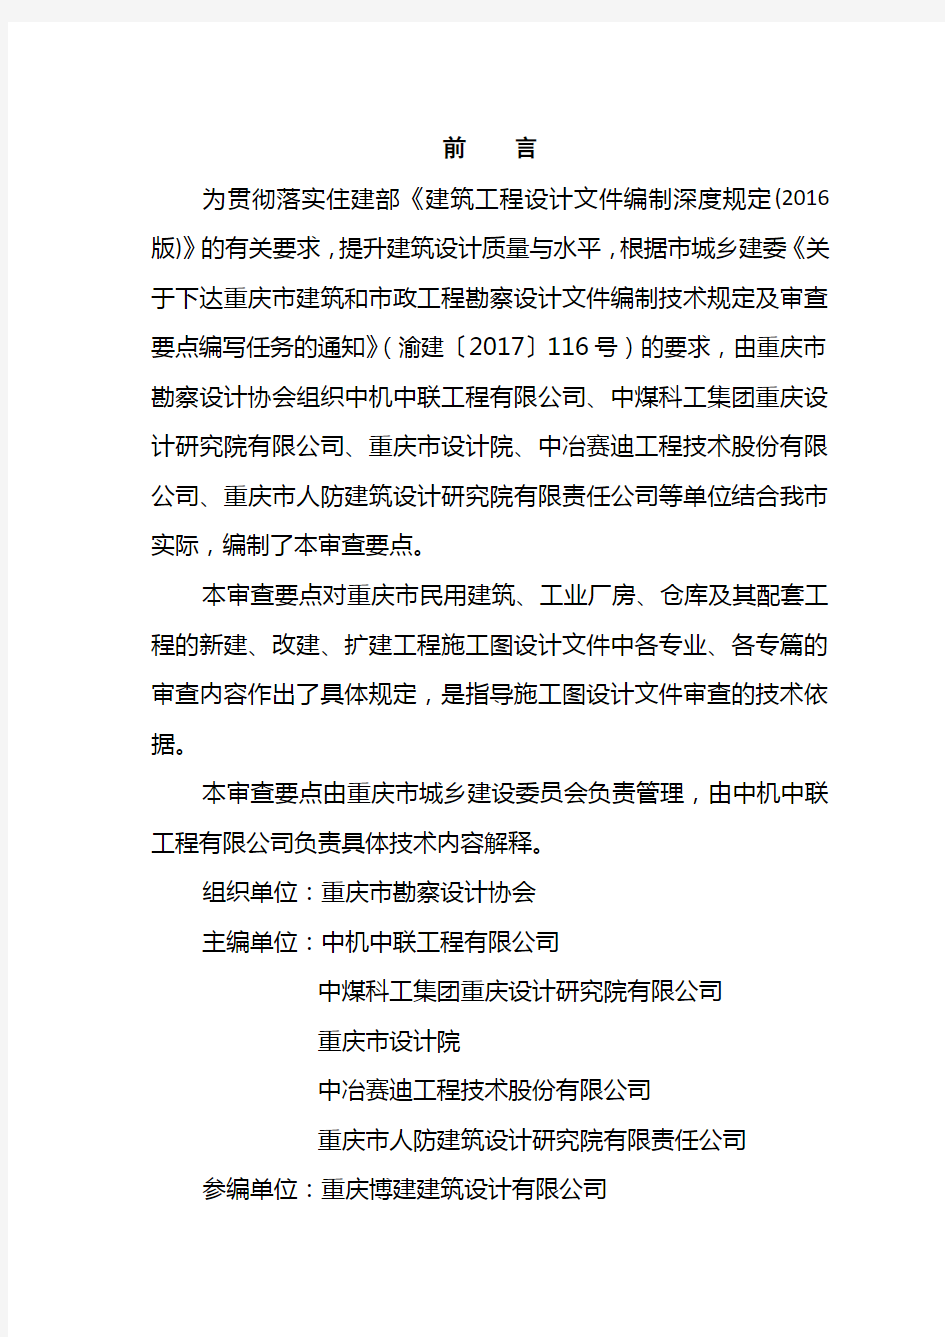 重庆市建筑工程施工图设计文件技术审查要点(2018年版)20181005